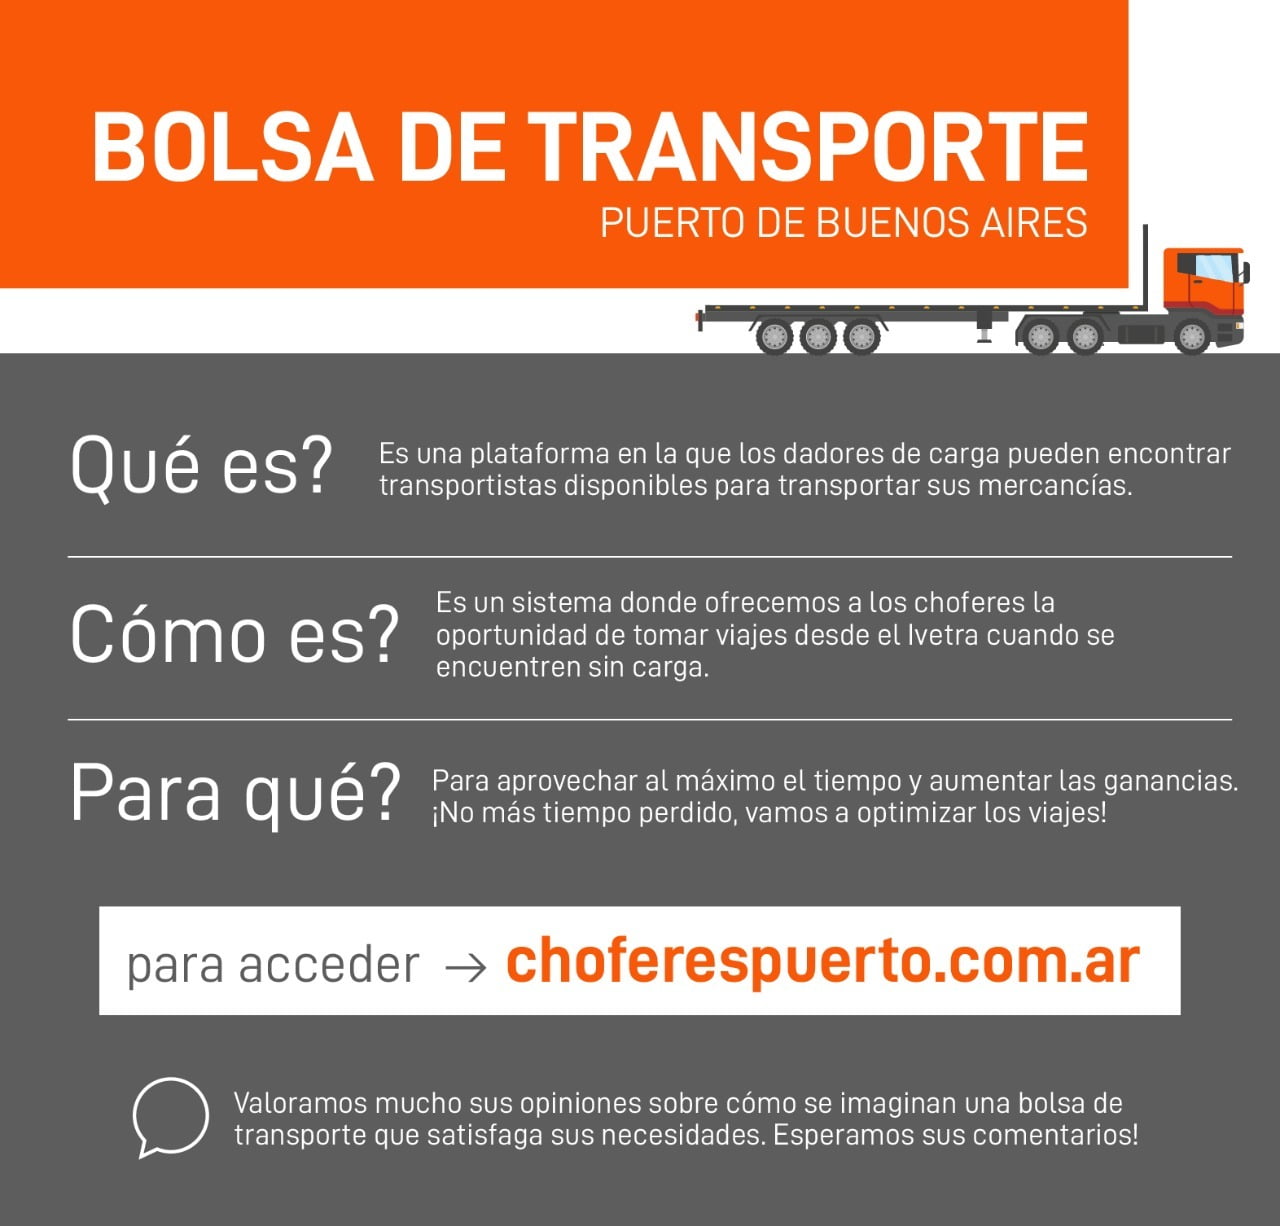 Novedad para Fleteros y Transportes: Ya puedes realizar cotizaciones de transporte en la Bolsa de Transporte del Puerto de Buenos Aires